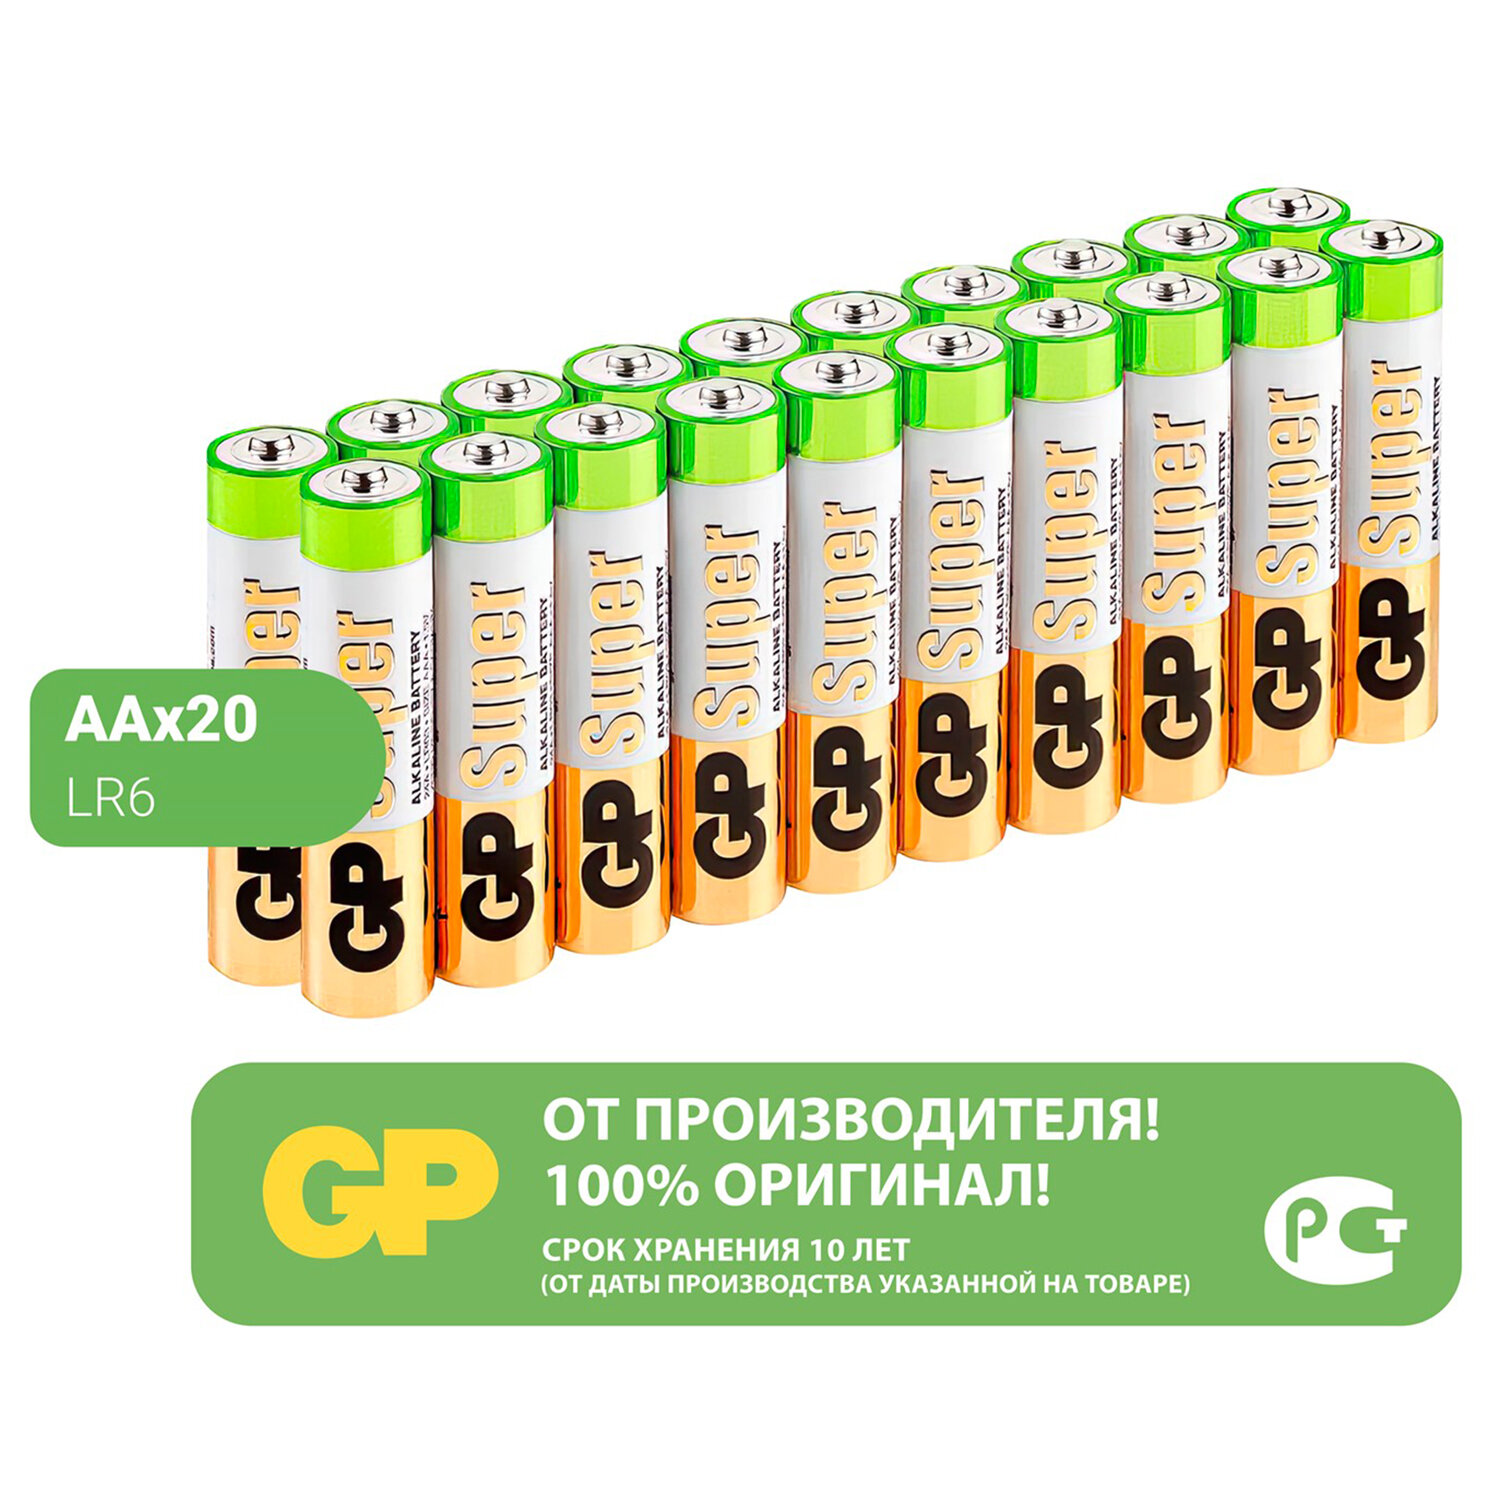 Батарейки GP Super, AA (LR6, 15А), алкалиновые, пальчиковые, КОМПЛЕКТ 20 шт., 15A-2CRVS20, GP 15A-2C